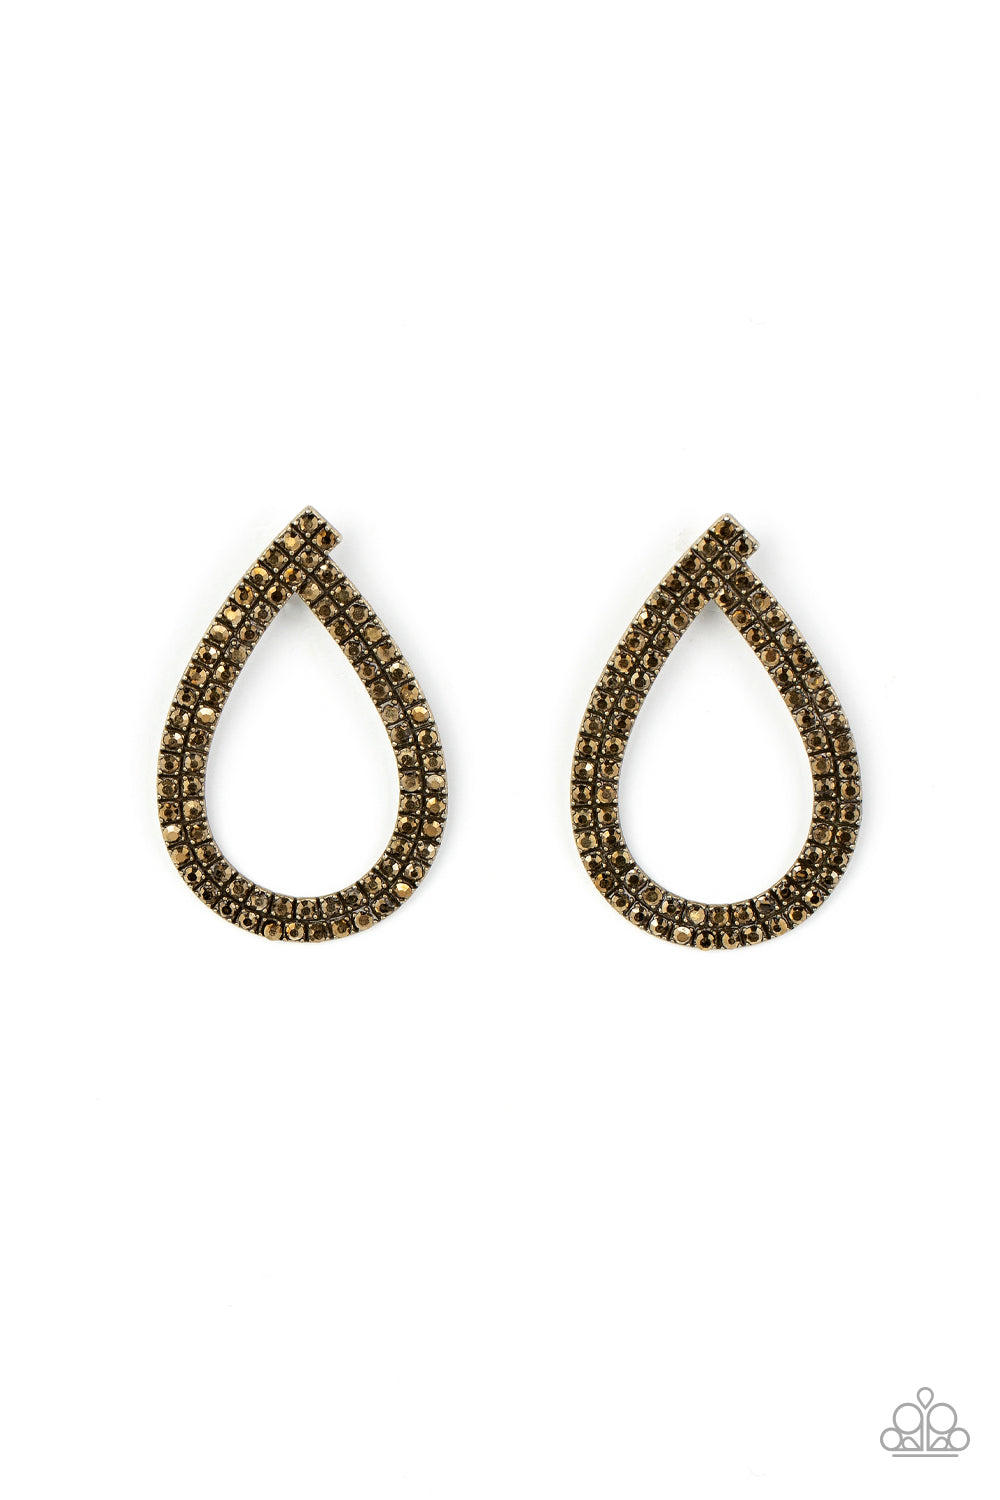 Diva Dust Paparazzi Accessories Earrings Brass